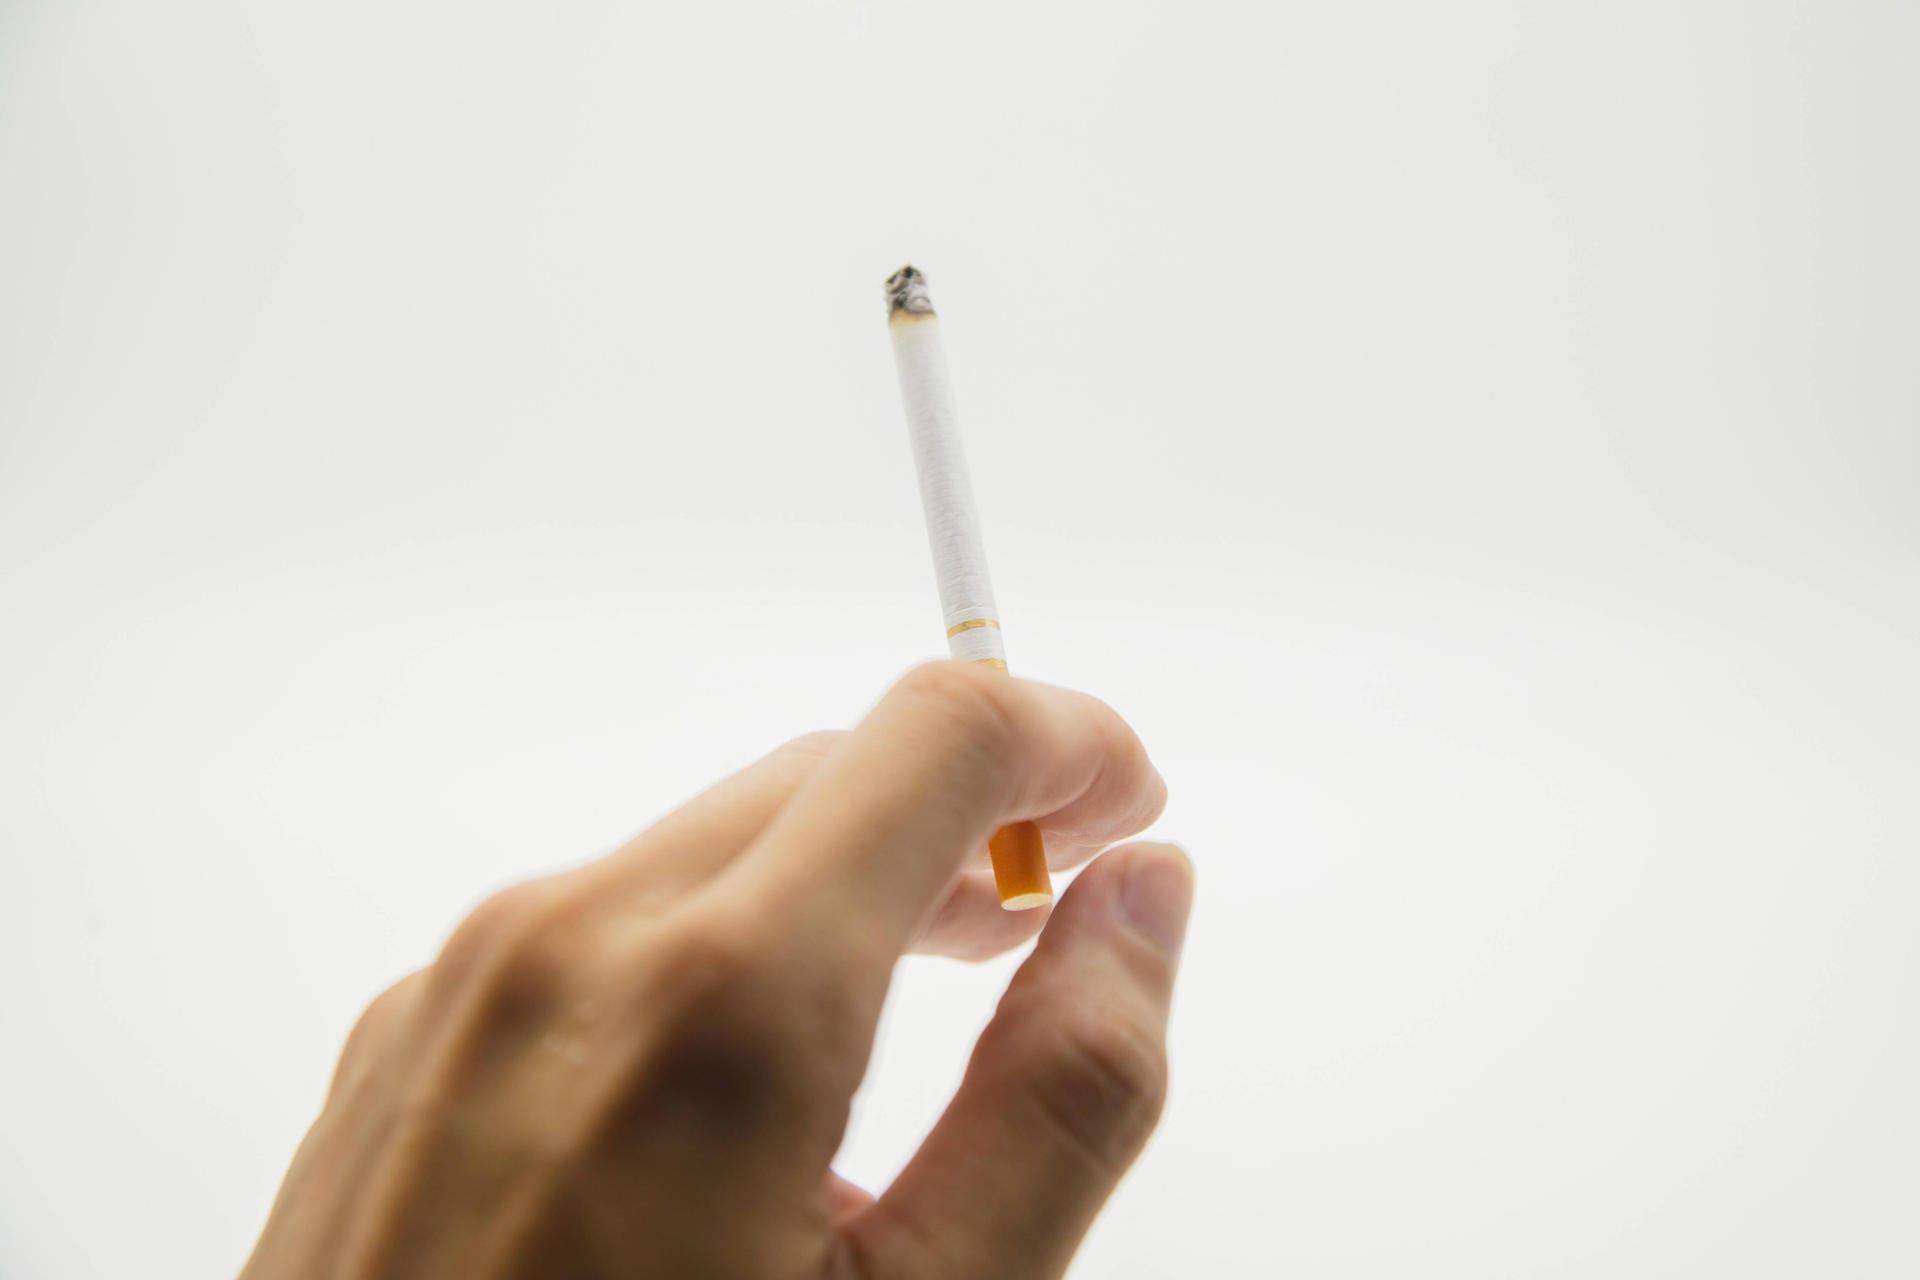 Türchen 10: Rauchen ist uncool geworden! Das bestätigt eine Umfrage der Bundeszentrale für gesundheitliche Aufklärung (BZgA) unter Jugendlichen im Alter von 12 bis 25 Jahren. Nur noch 5,6 Prozent der 12- bis 17-Jährigen und 21,2 Prozent der 18- bis 25-Jährigen gaben an, gelegentlich oder regelmäßig zu rauchen – ein historischer Tiefstand. Die große Koalition will diese Entwicklung unterstützen. Ab 2022 soll unter anderem Plakatwerbung für Zigaretten verboten werden.